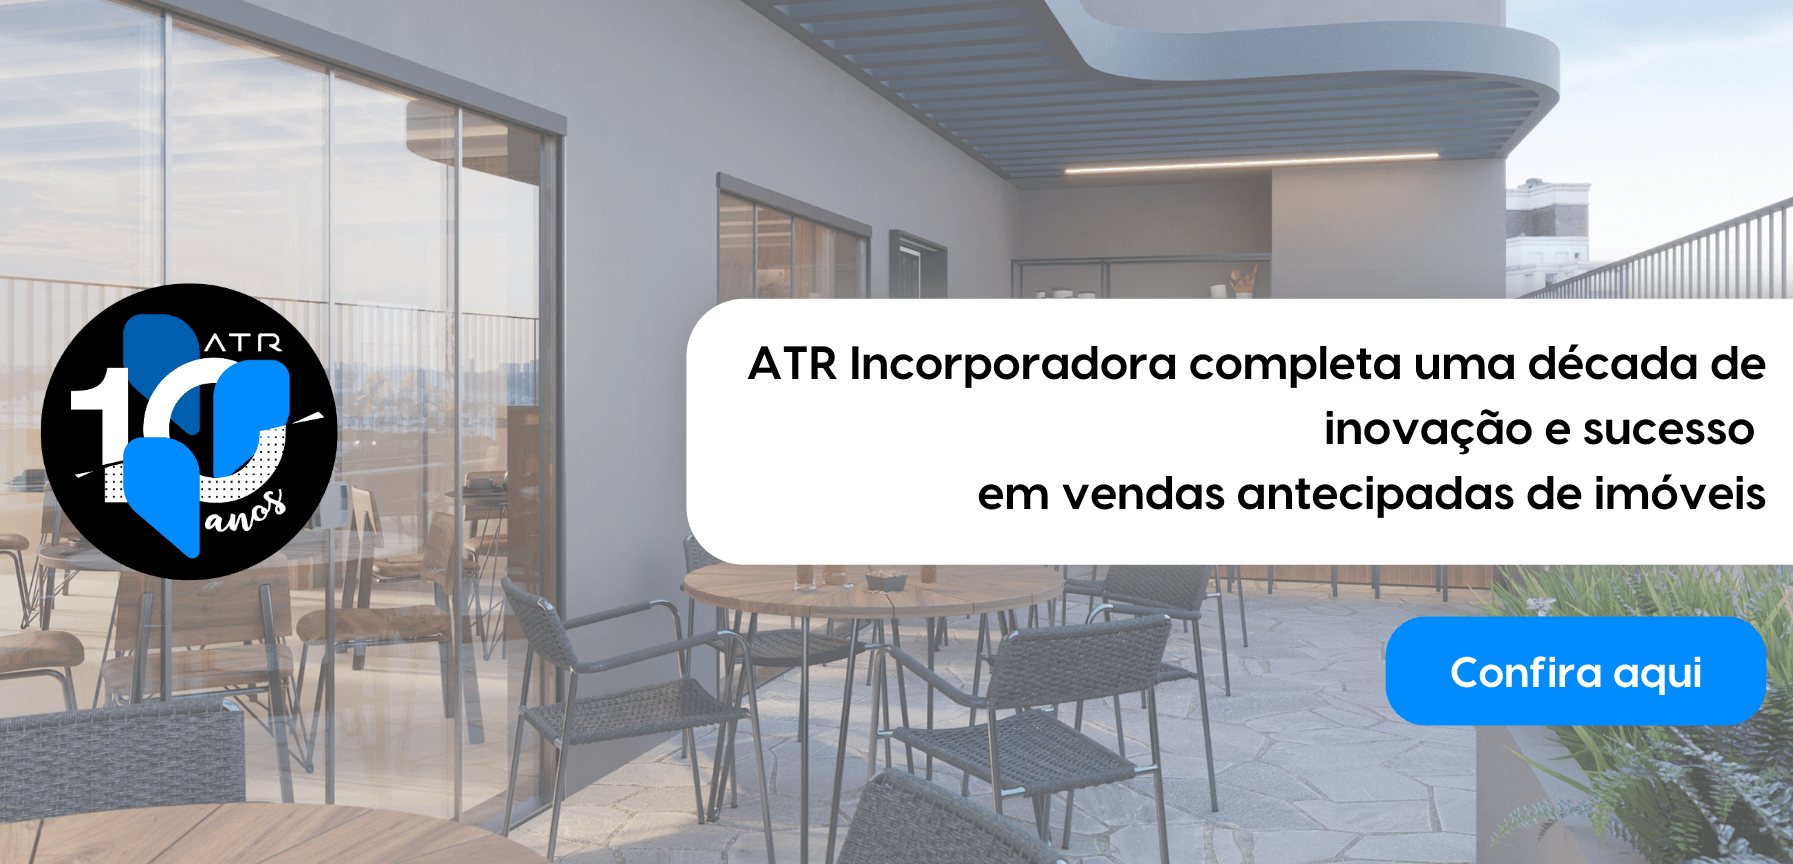 ATR Incorporadora completa uma década de inovação e sucesso  em vendas antecipadas de imóveis